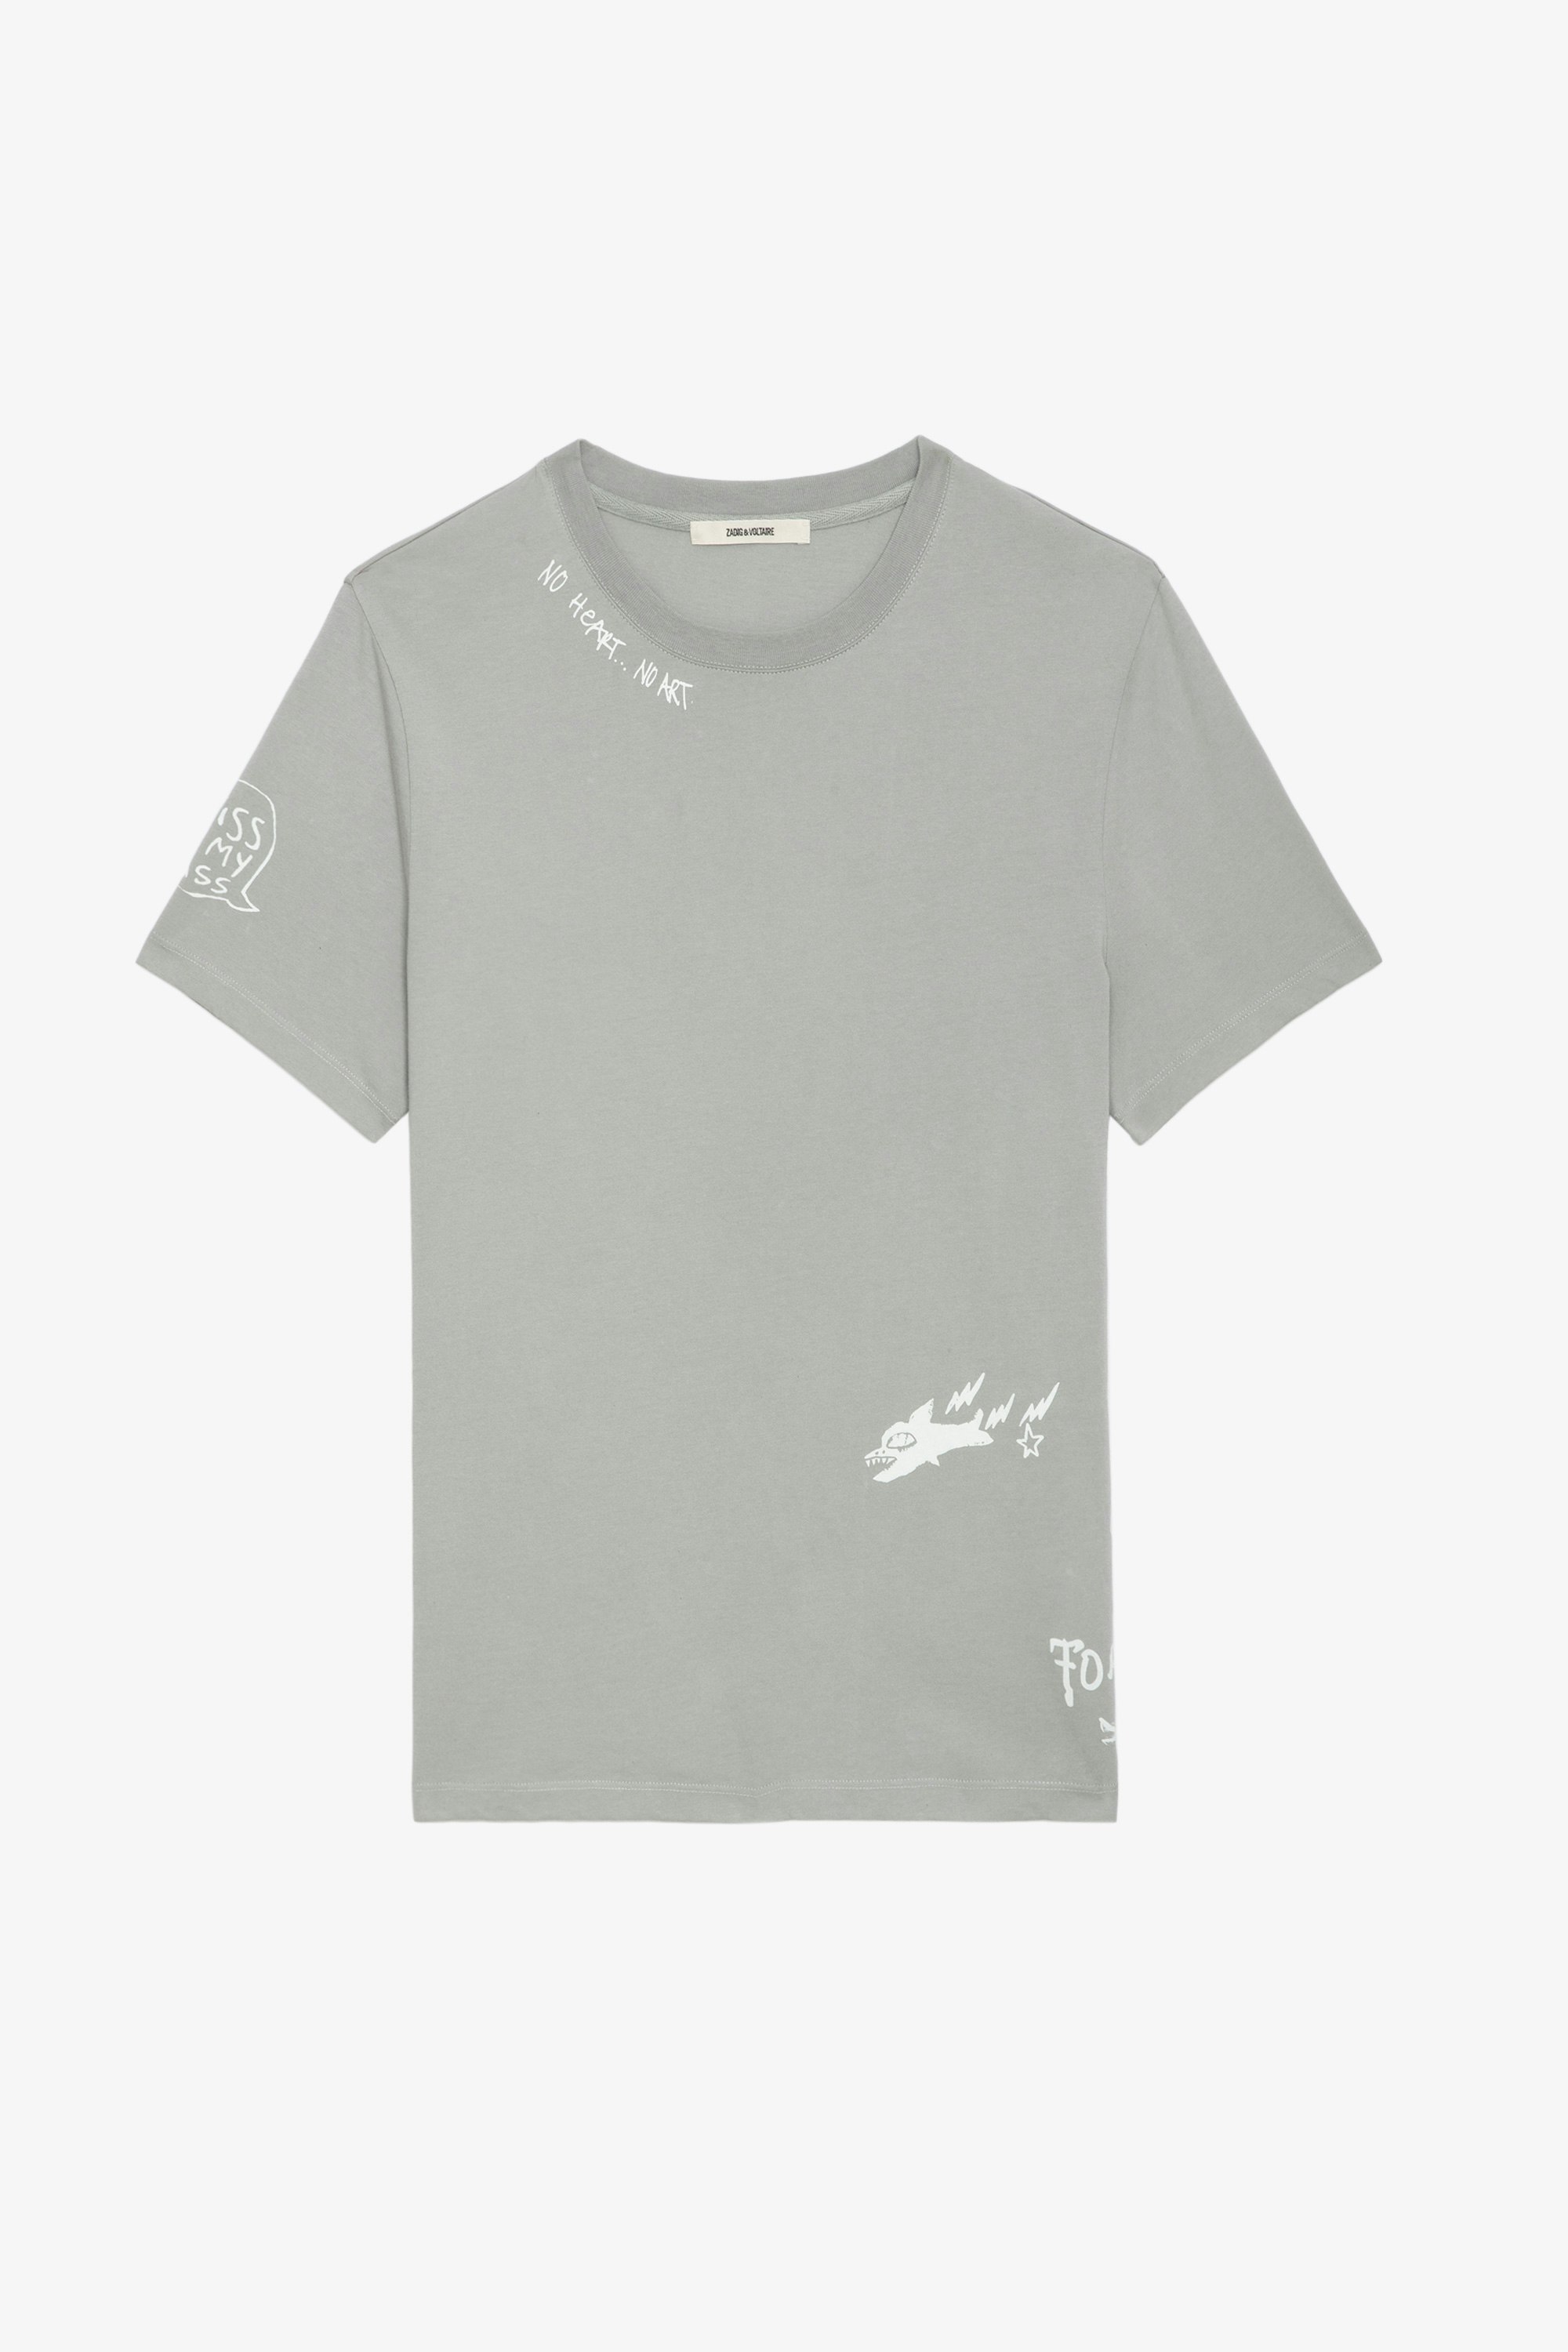 Camiseta Ted Tag - Camiseta de algodón ecológico en color gris con detalles decorativos de Humberto Cruz.